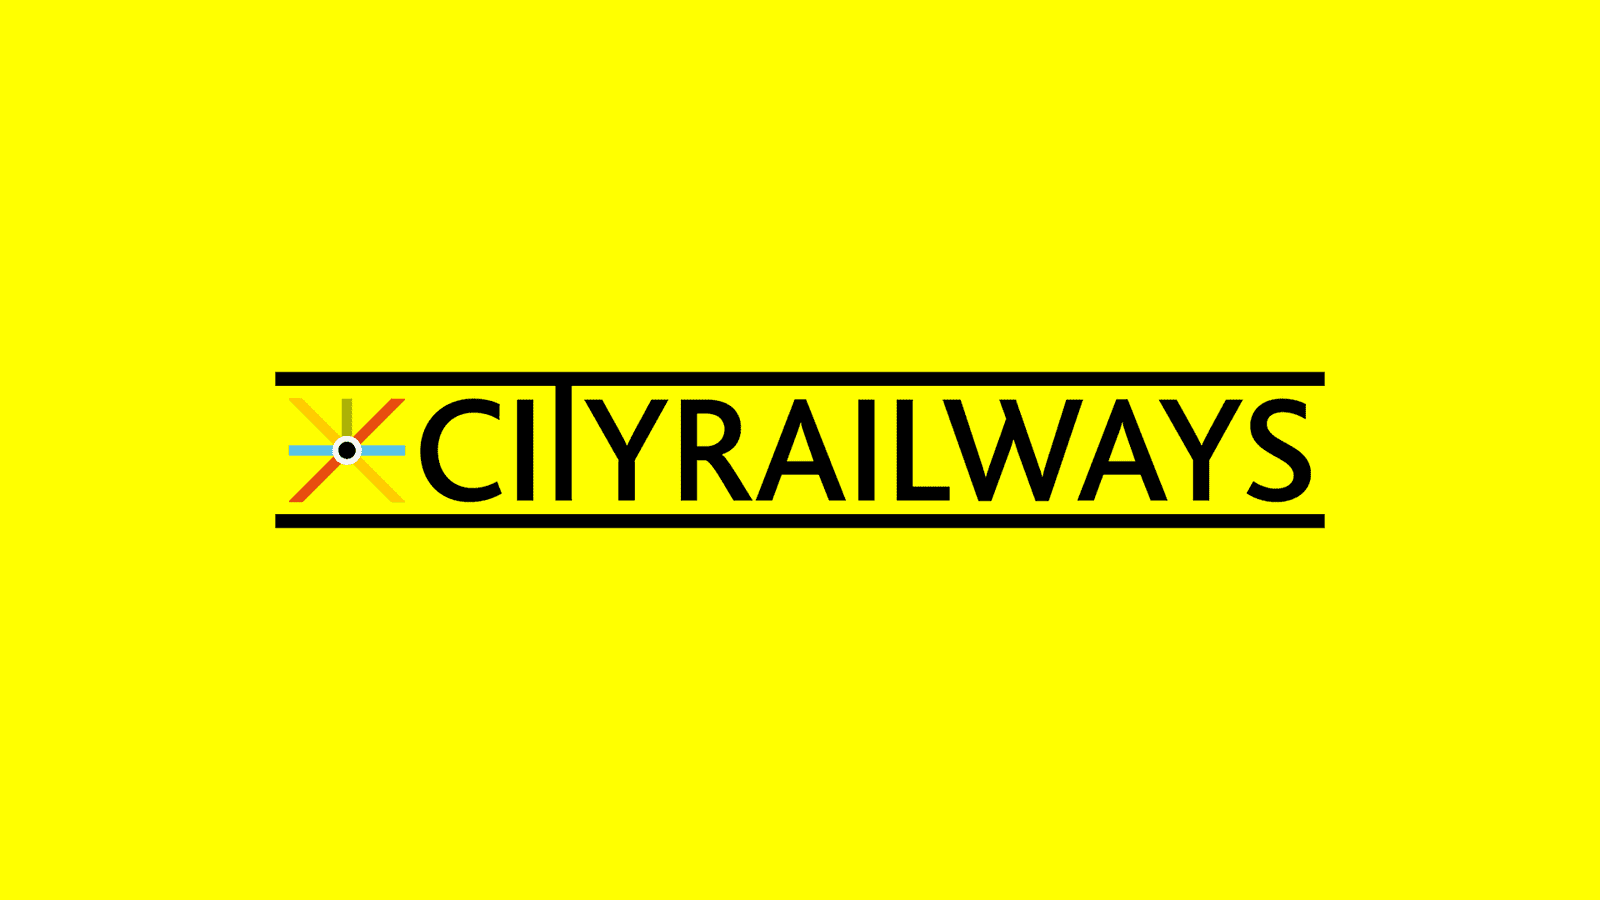 Cityrailways